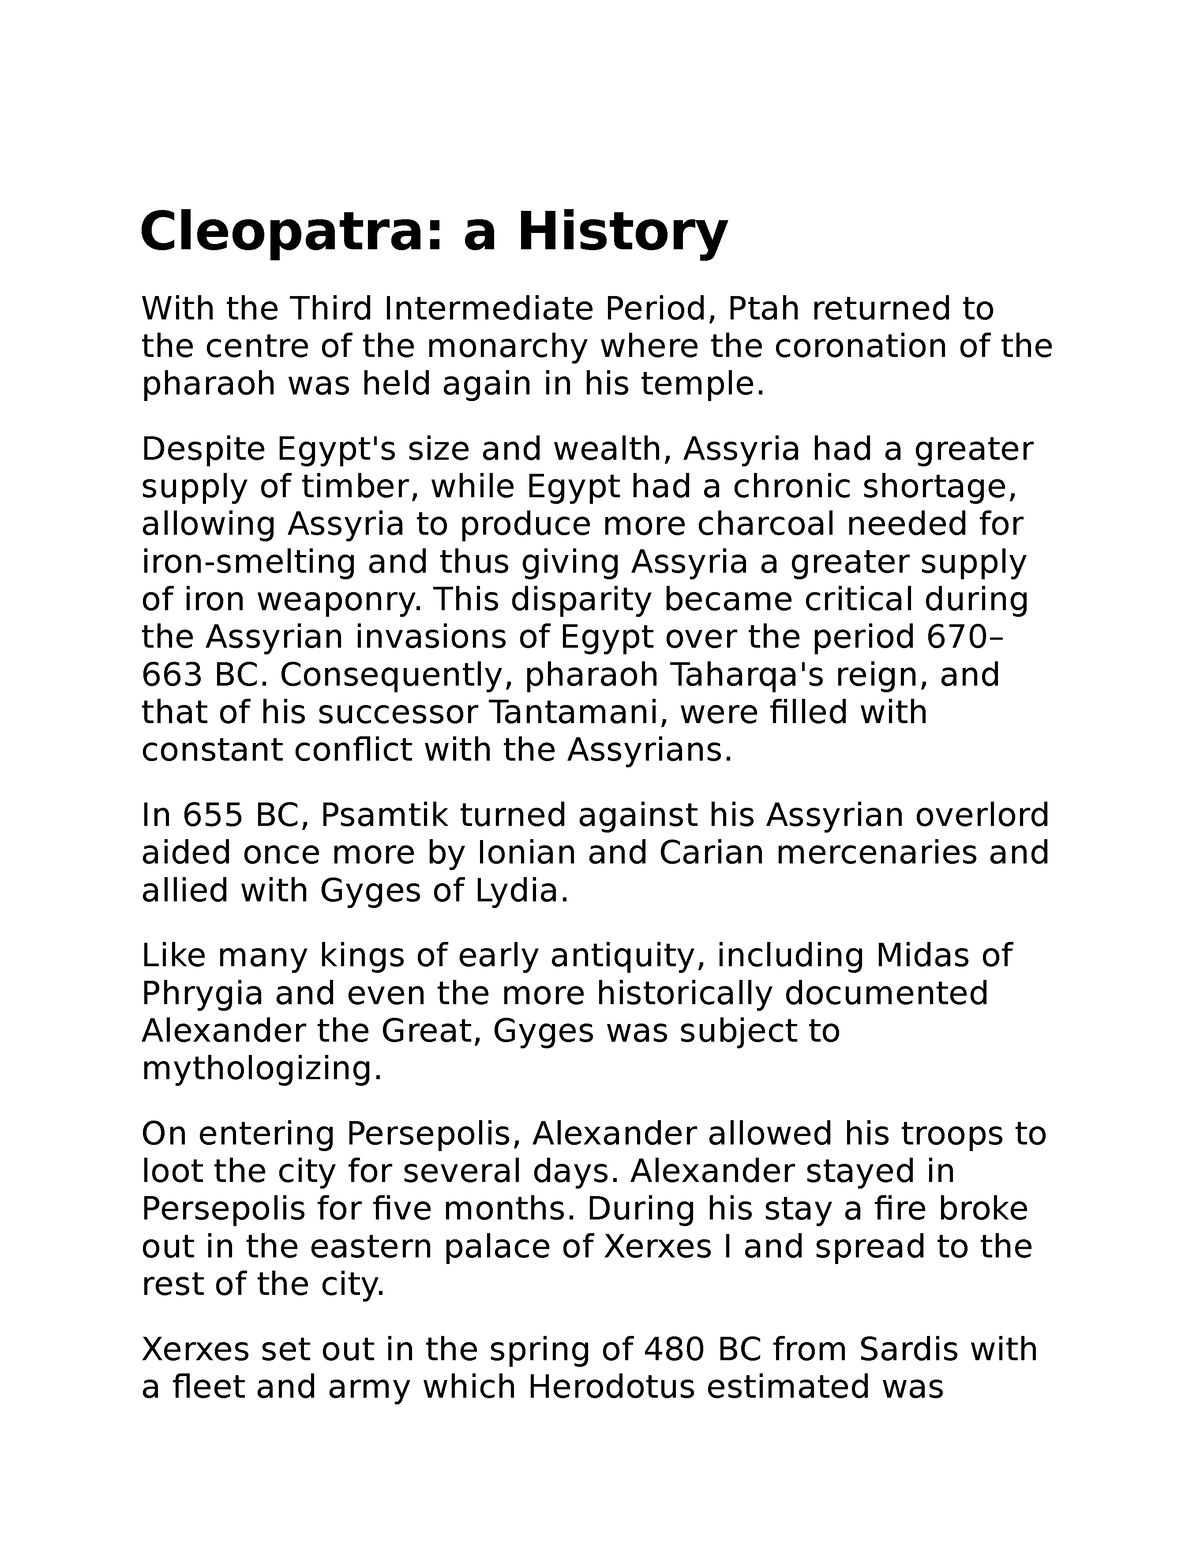 essay on cleopatra